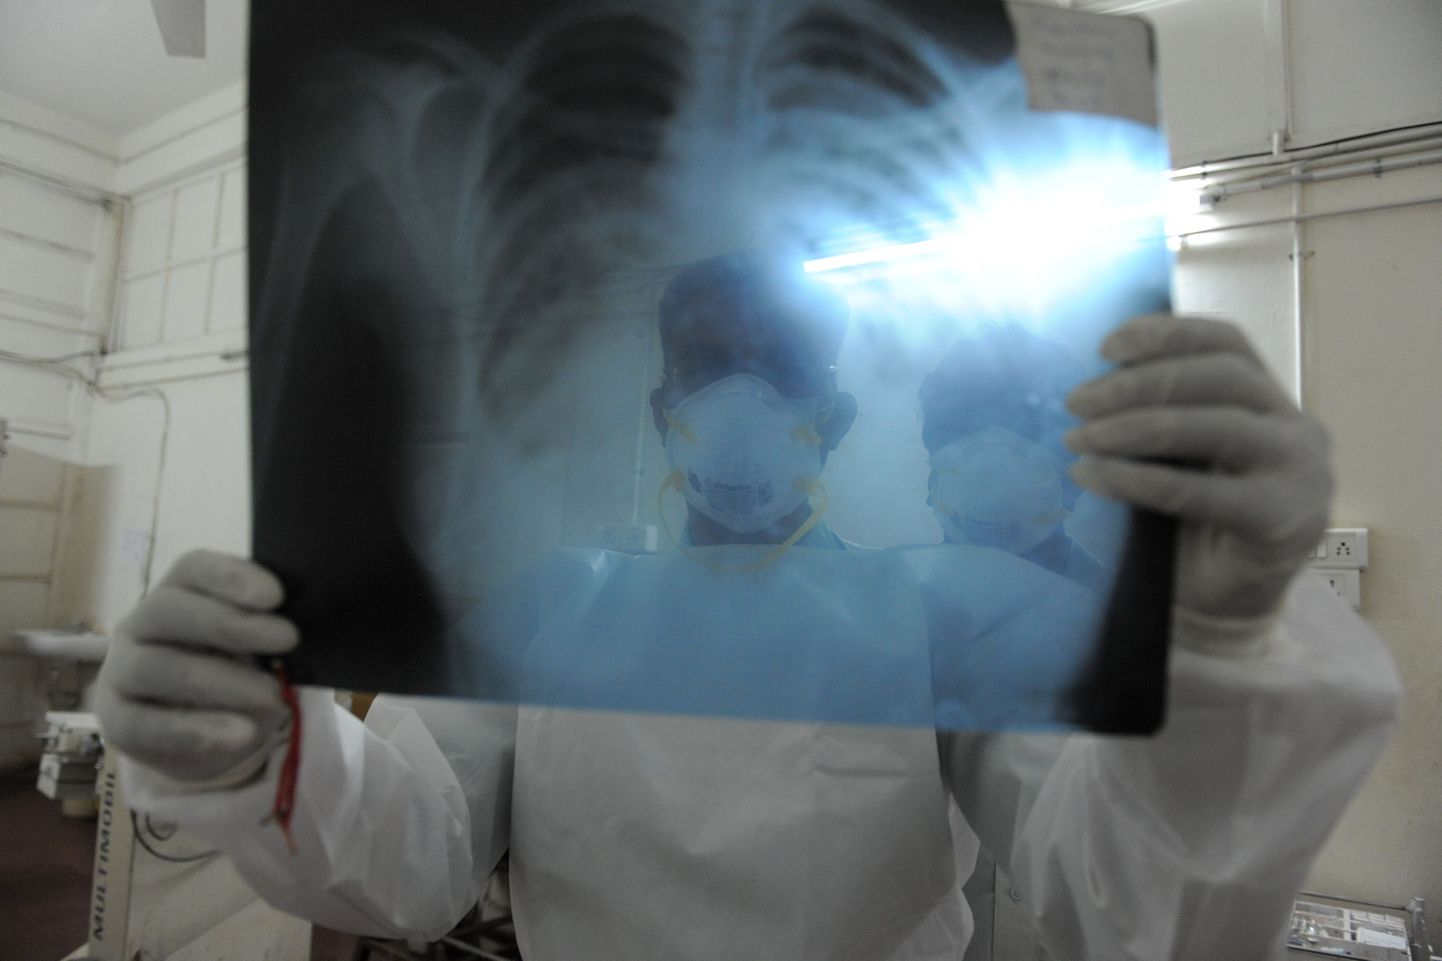 Seagripi viirusesse nakatunu röntgenpilt 12. märtsil 2013 Indias.